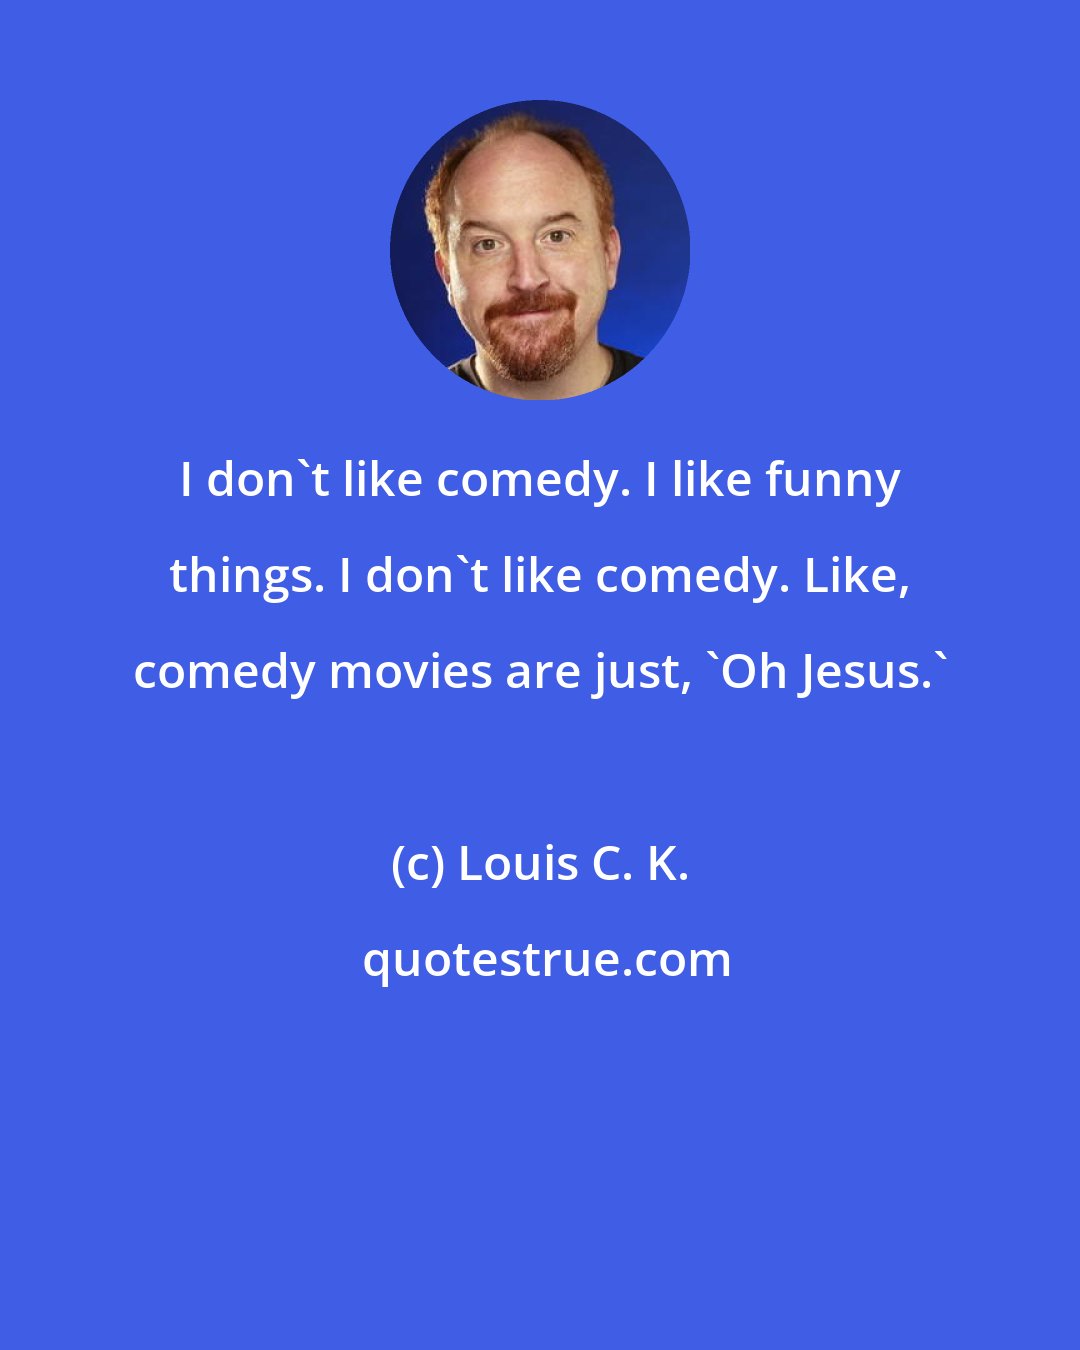 Louis C. K.: I don't like comedy. I like funny things. I don't like comedy. Like, comedy movies are just, 'Oh Jesus.'